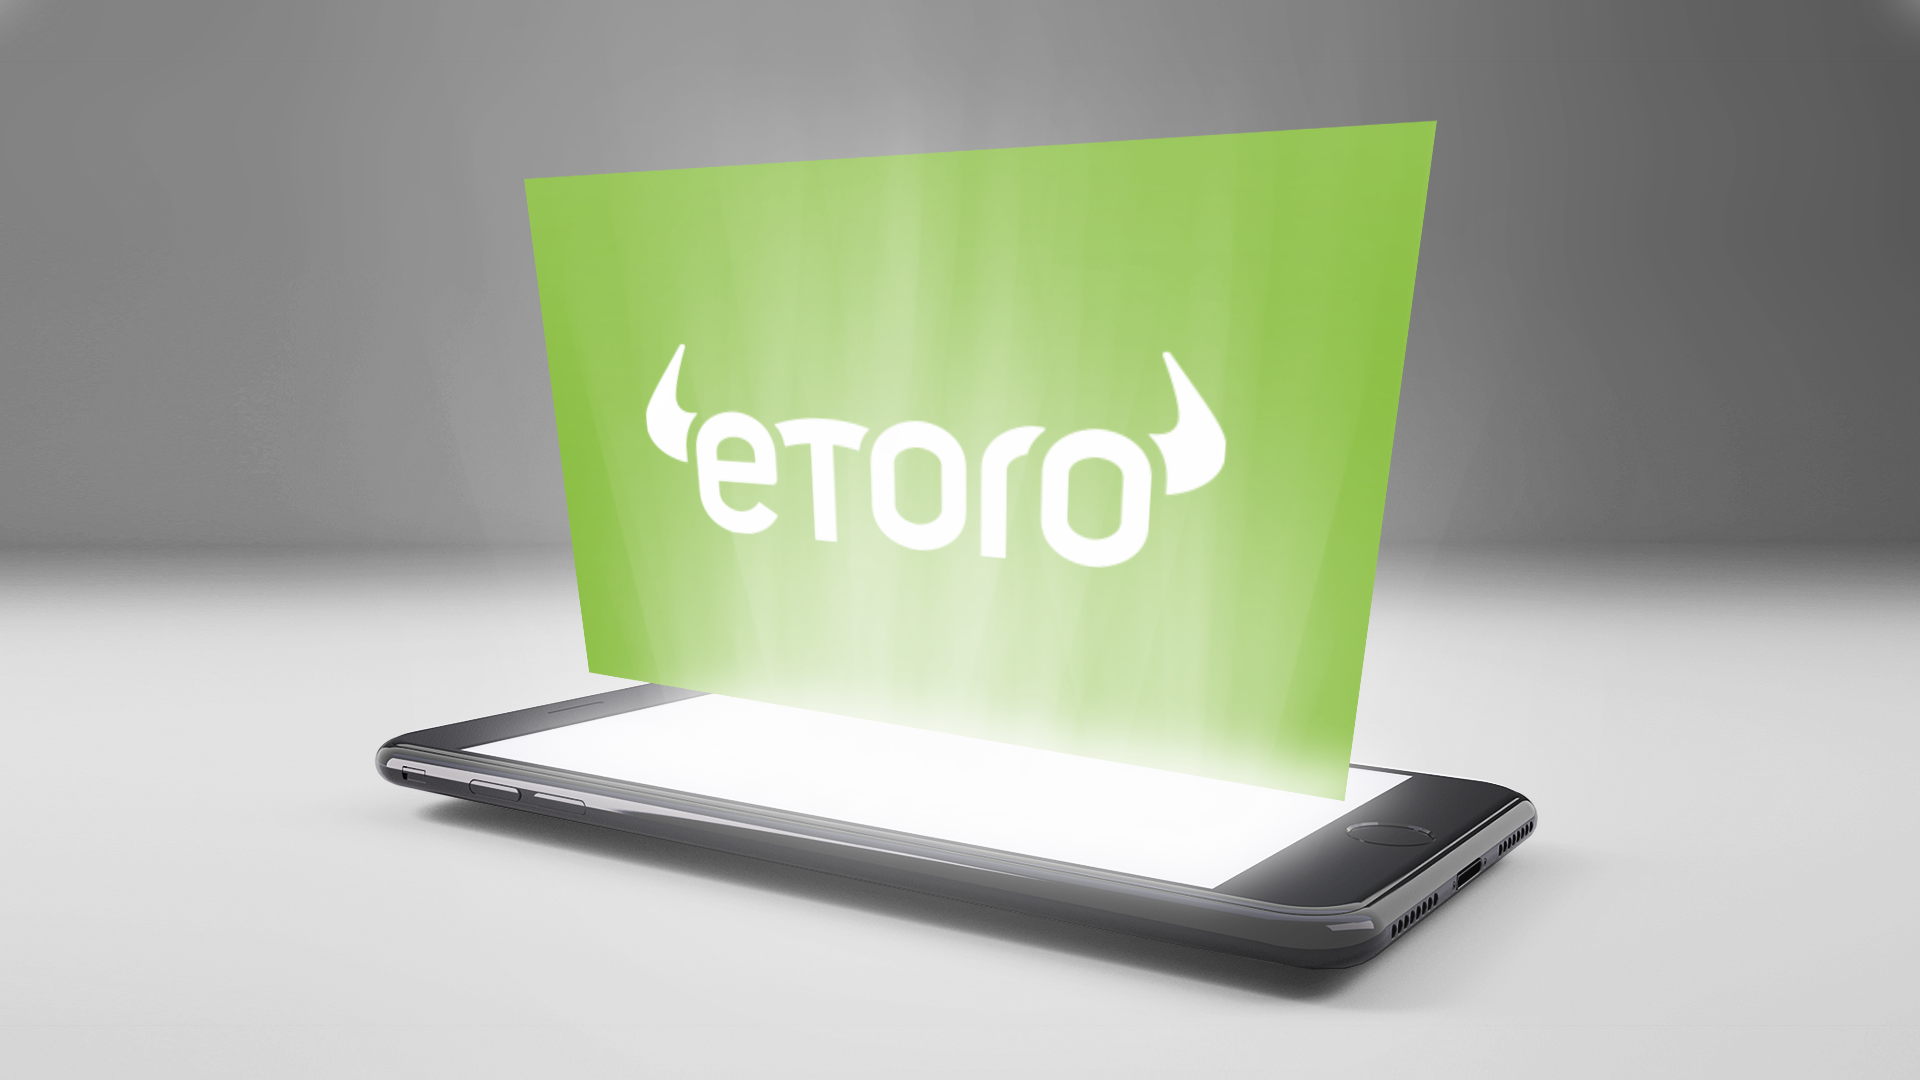 How to Invest in eToro IPO 2021